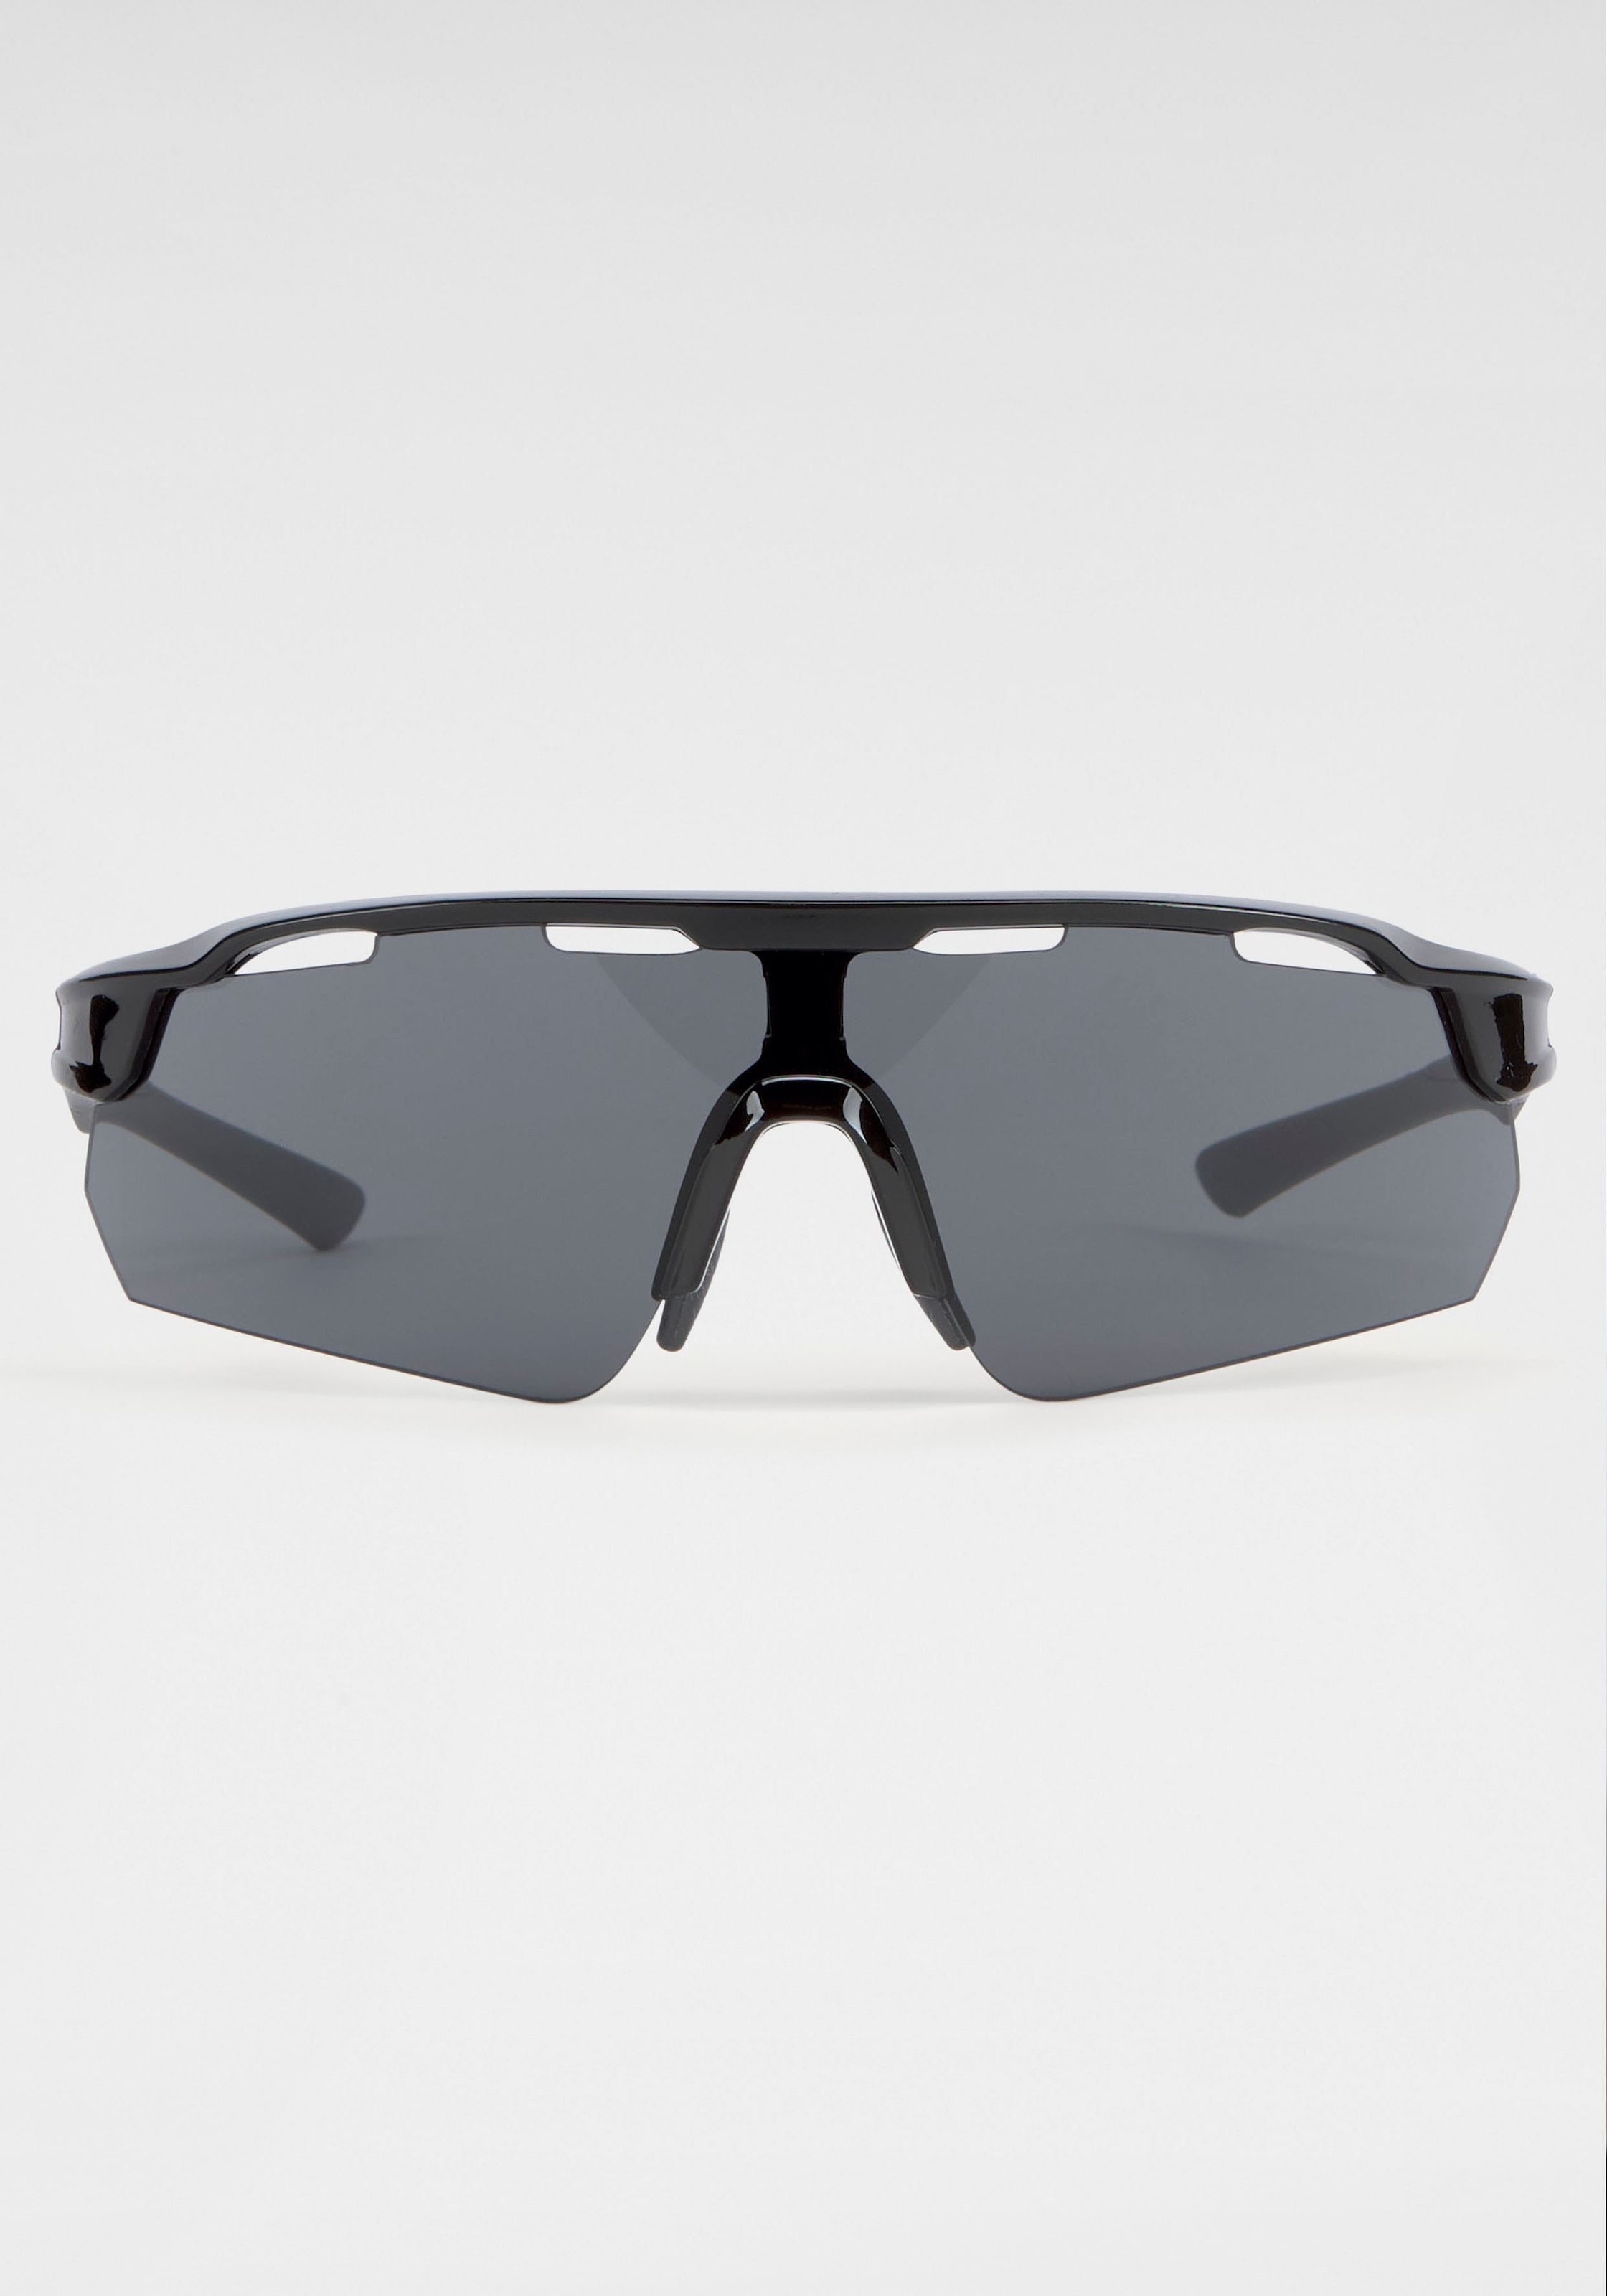 BACK IN BLACK Eyewear mit bei Sonnenbrille, gebogenen Gläsern